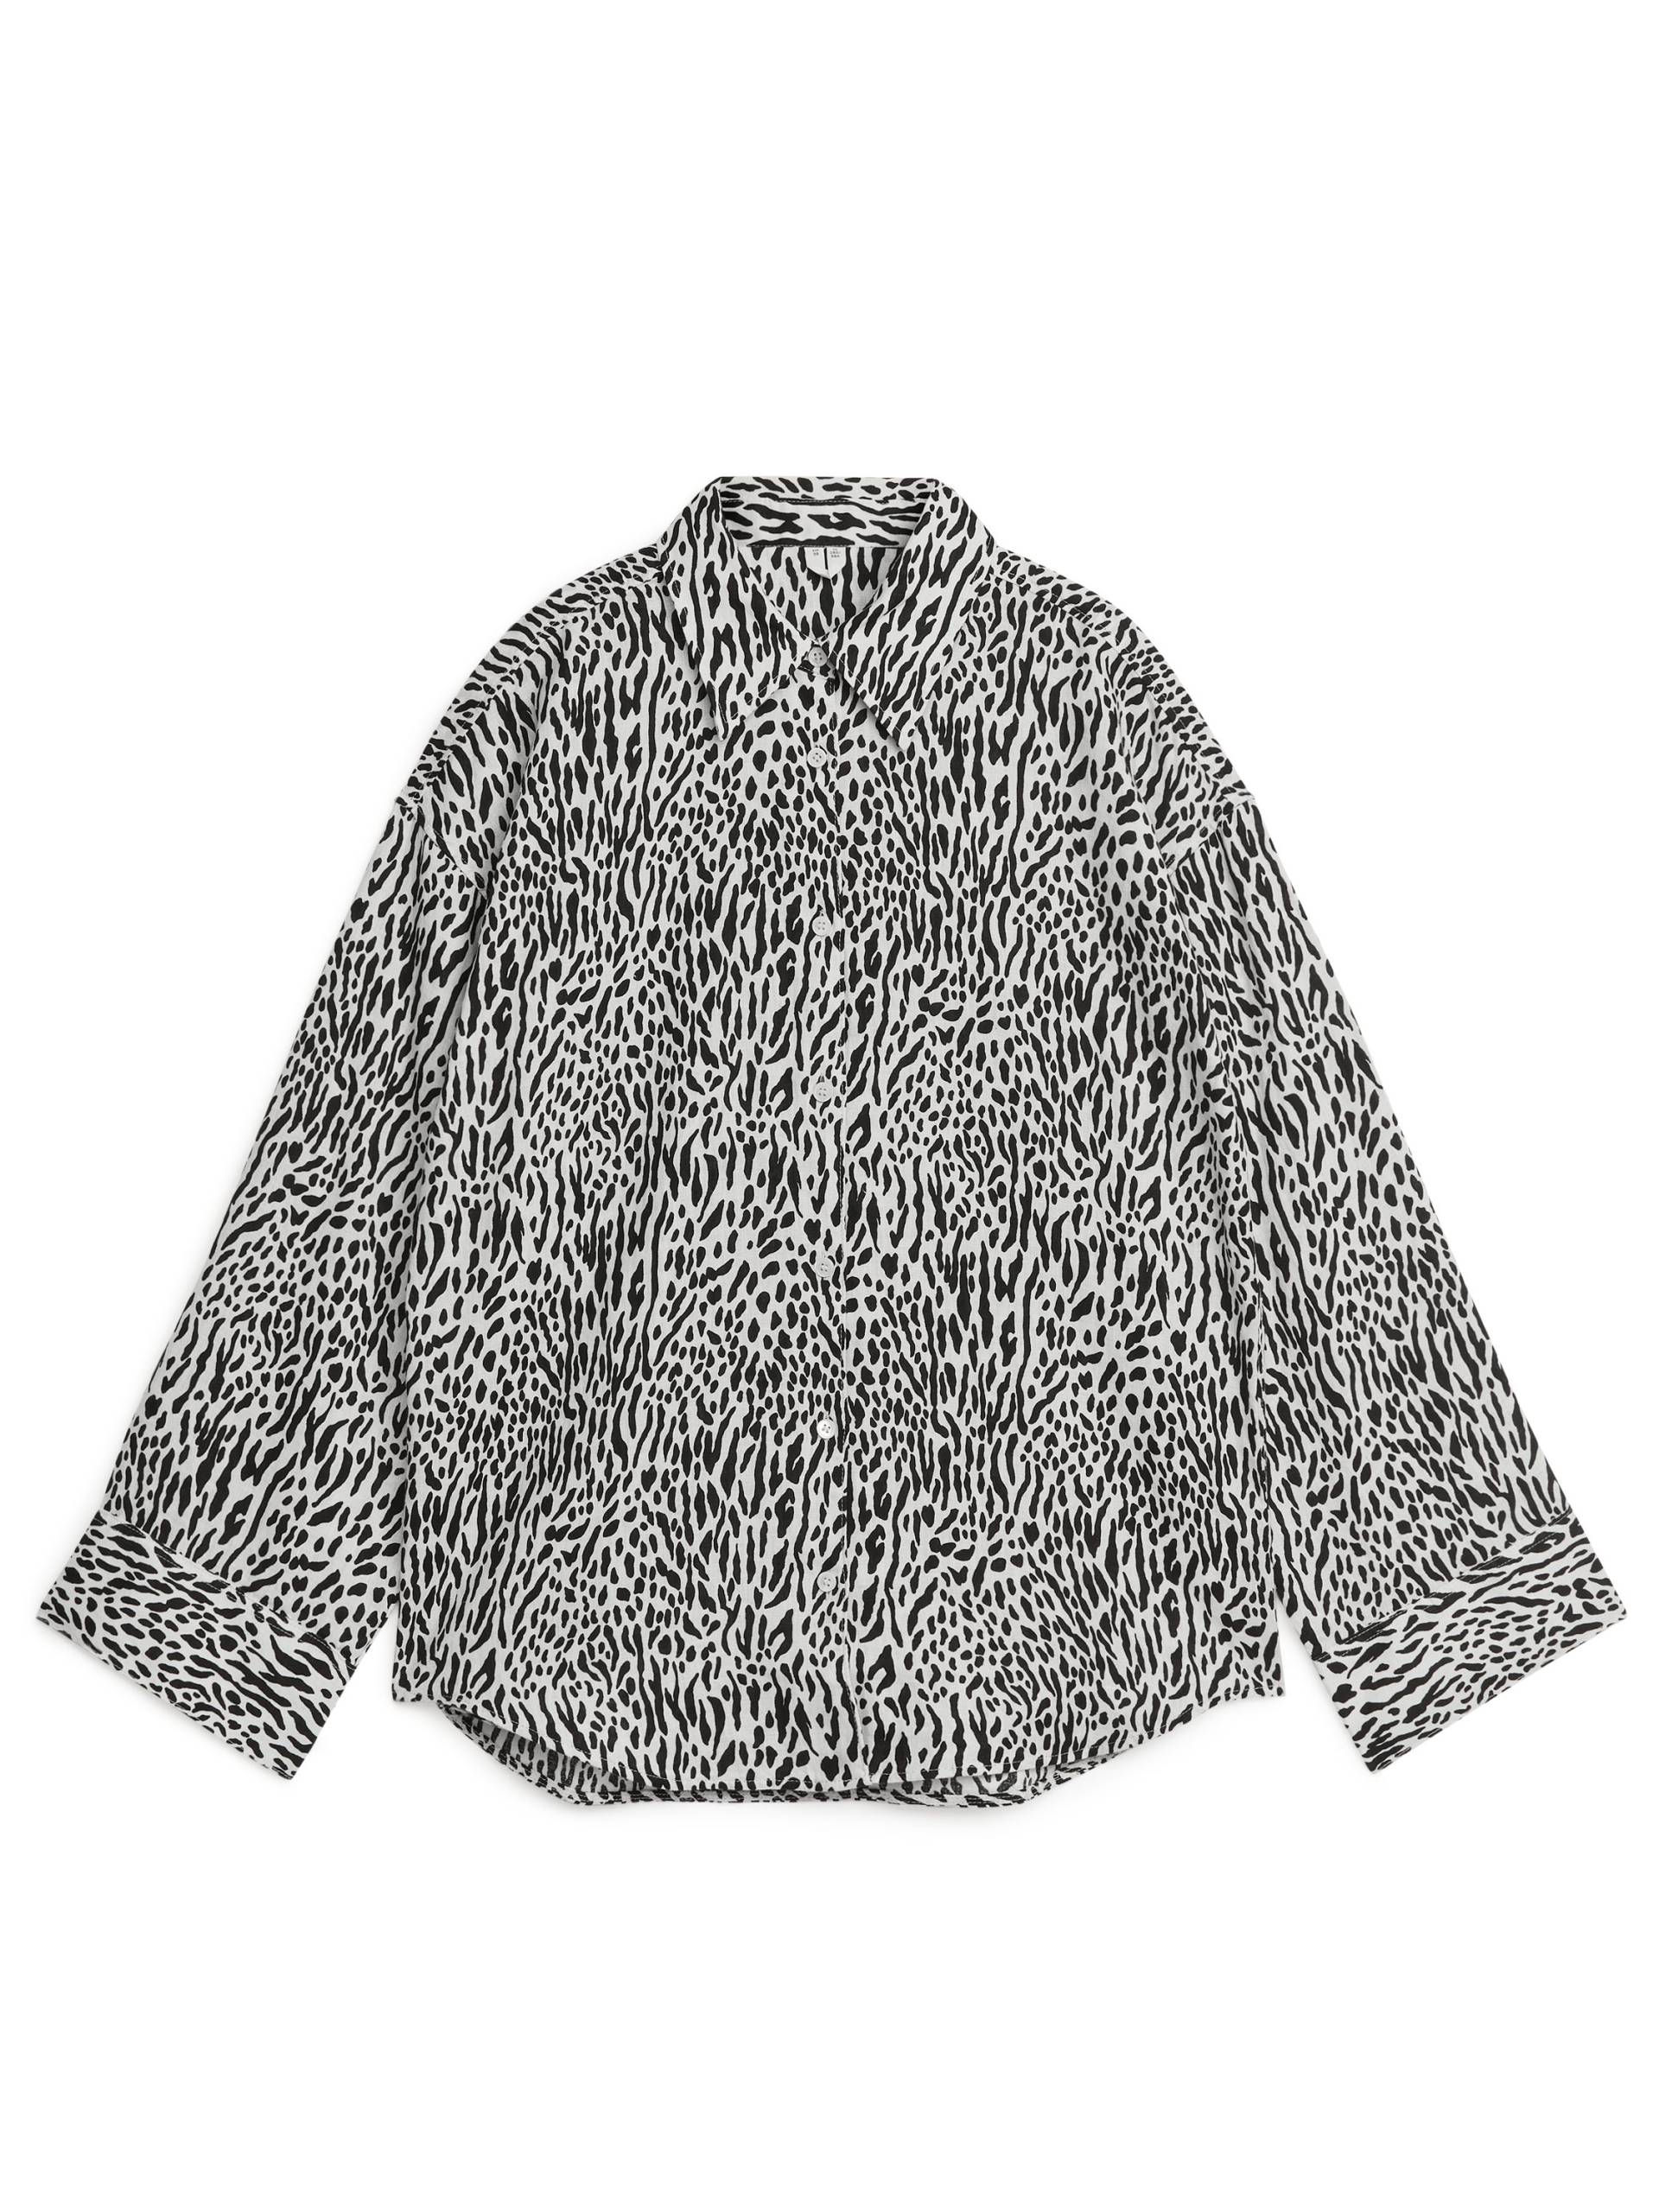 Arket Leinenhemd Cremeweiß/Schwarz, Freizeithemden in Größe 38. Farbe: Off white/black 004 von Arket